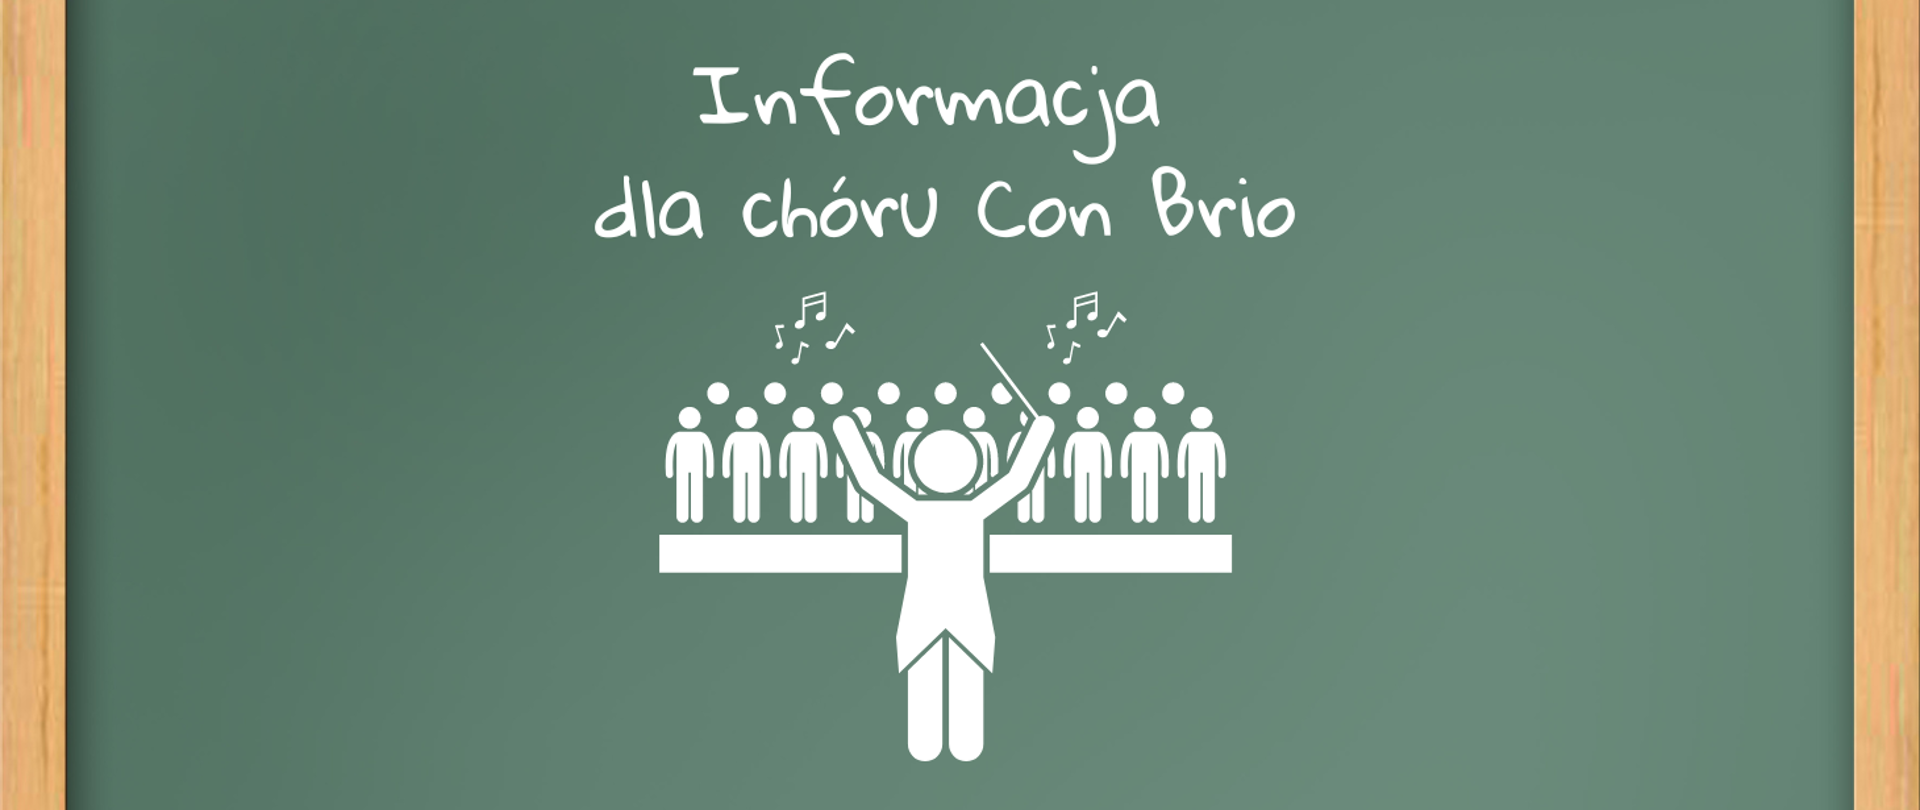 Plakat przedstawiający zieloną tablicę szkolną w drewnianej ramie. Na śroku tekst w kolorze białym "Informacja dla chóru Con Brio". Pod tekstem biała grafika chóru wraz z dyrygentem.